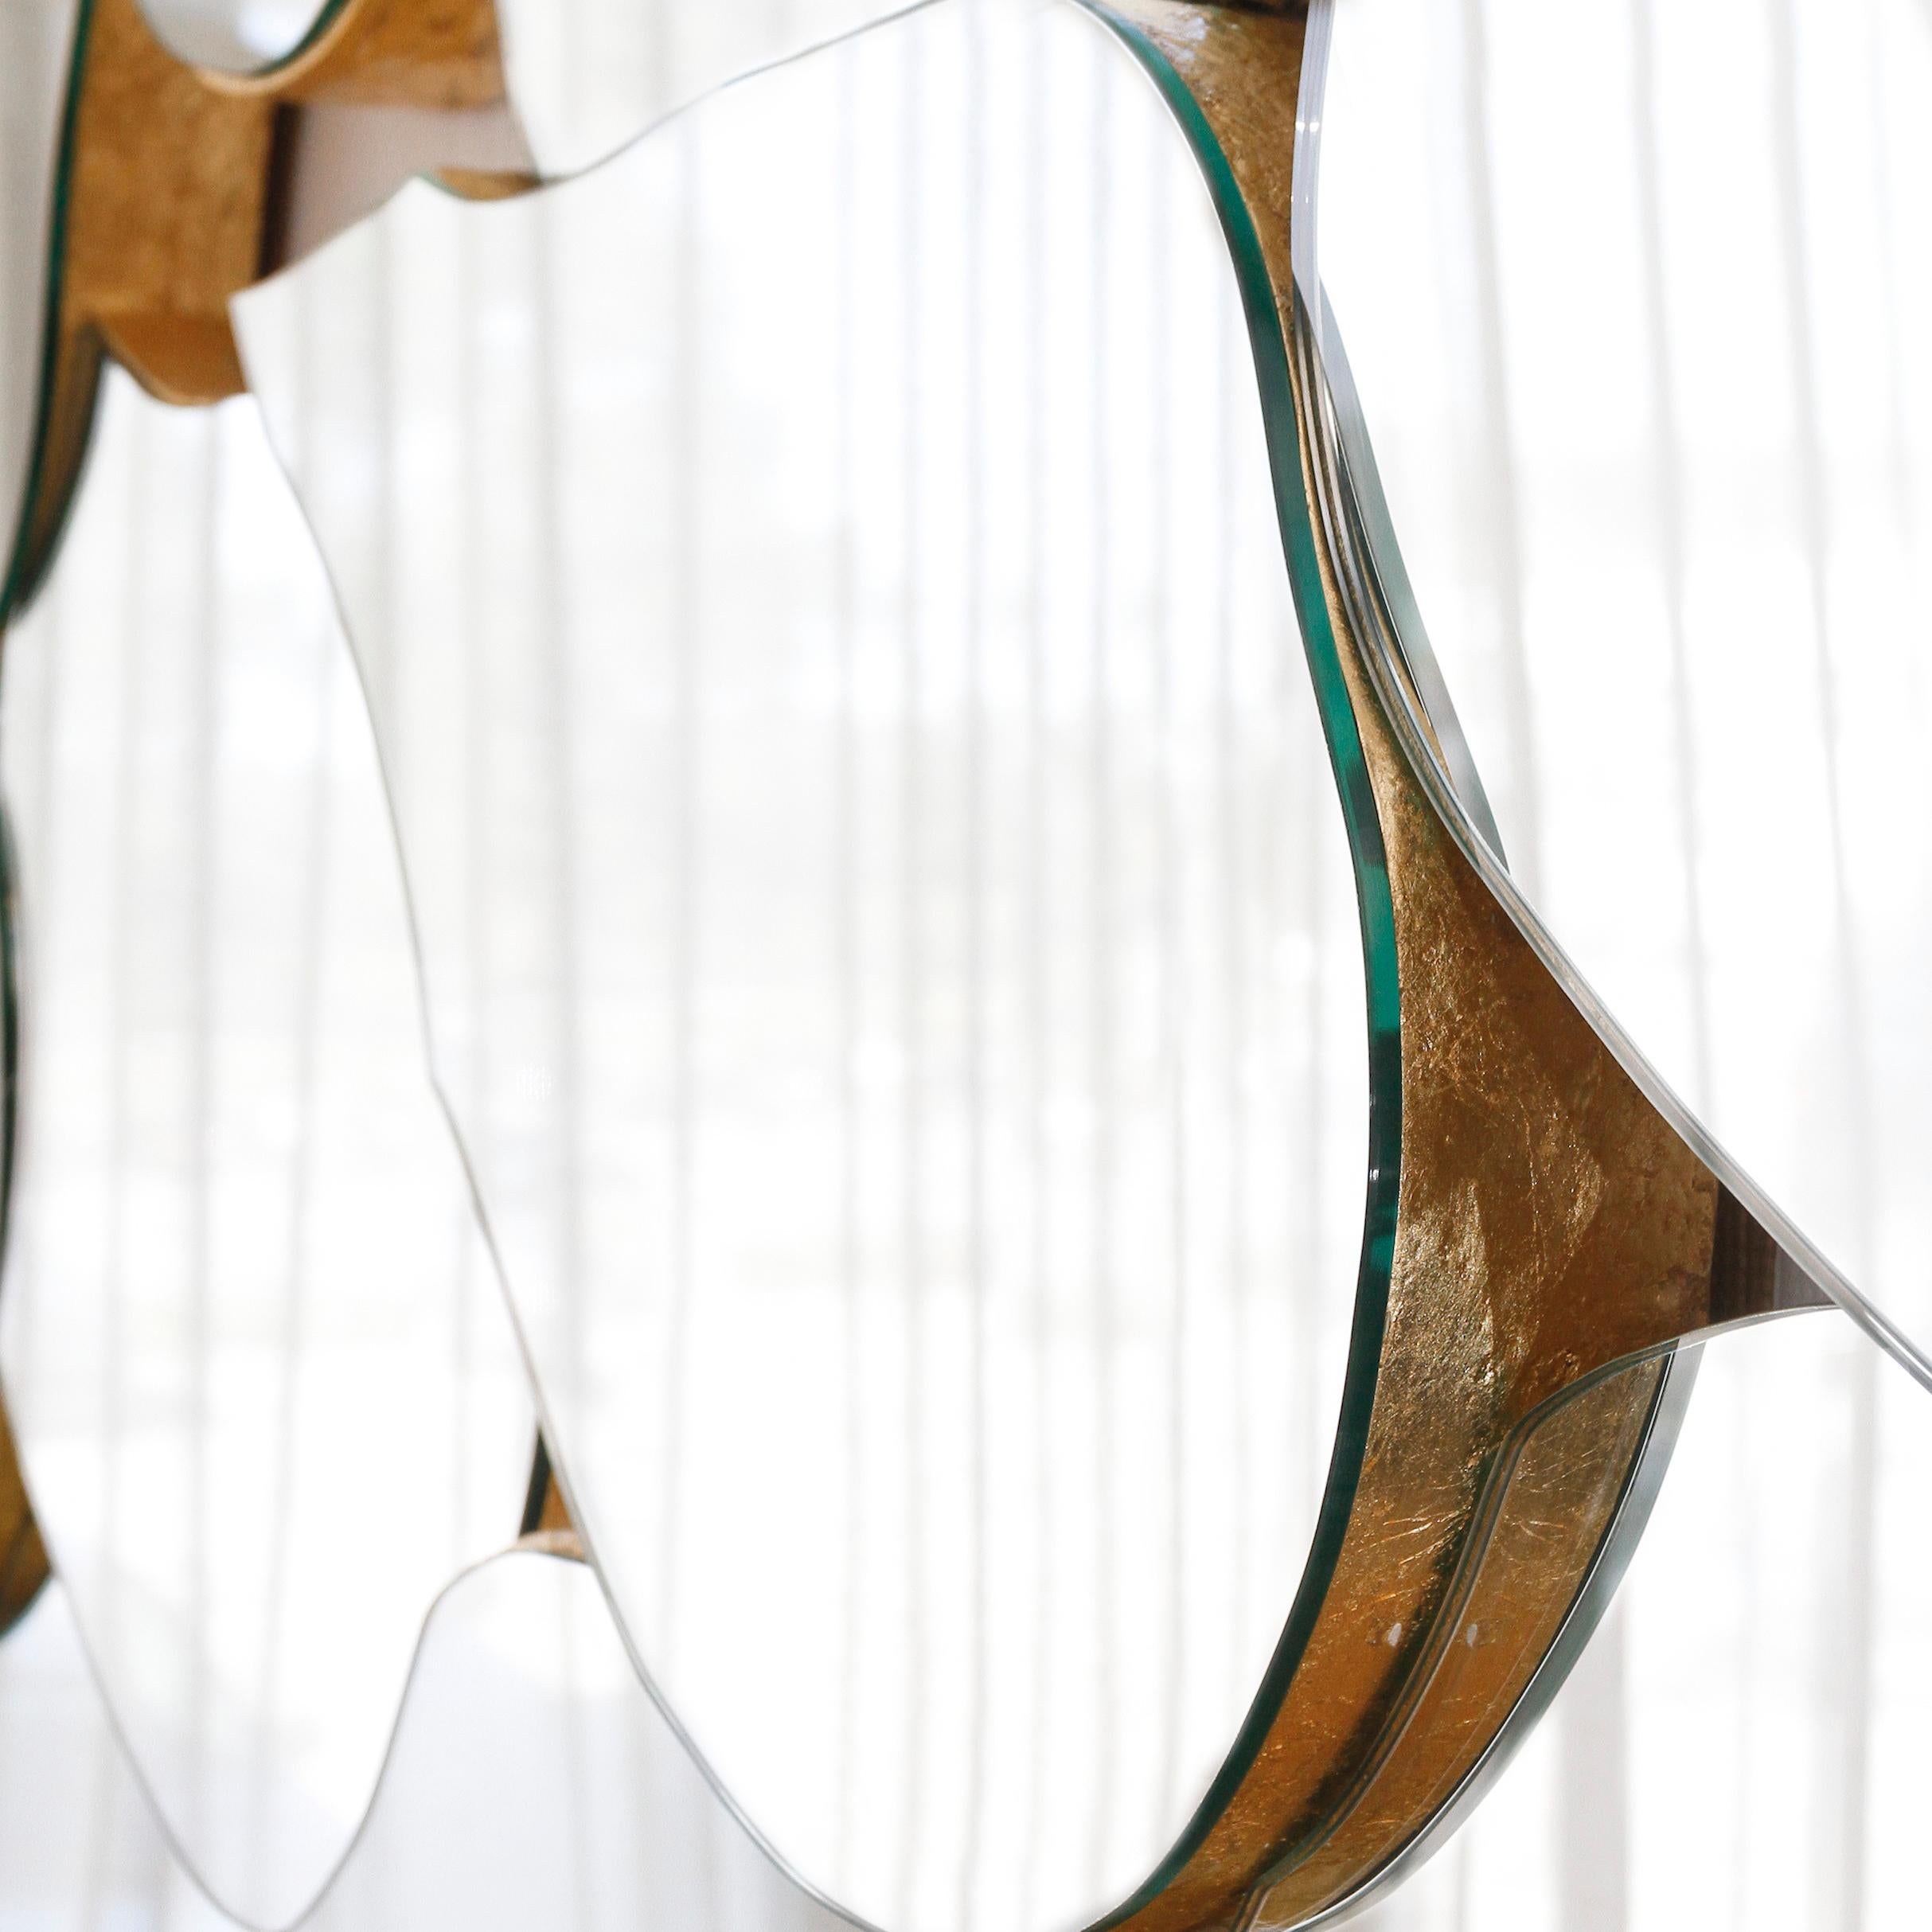 Miroir Infinity, Collection S Collective, fabriqué à la main au Portugal - Europe par GF Modern.

Le miroir mural Infinity reflète le passage du temps dans un regard infini, captivant l'attention à chaque rencontre. Avec son design en forme de